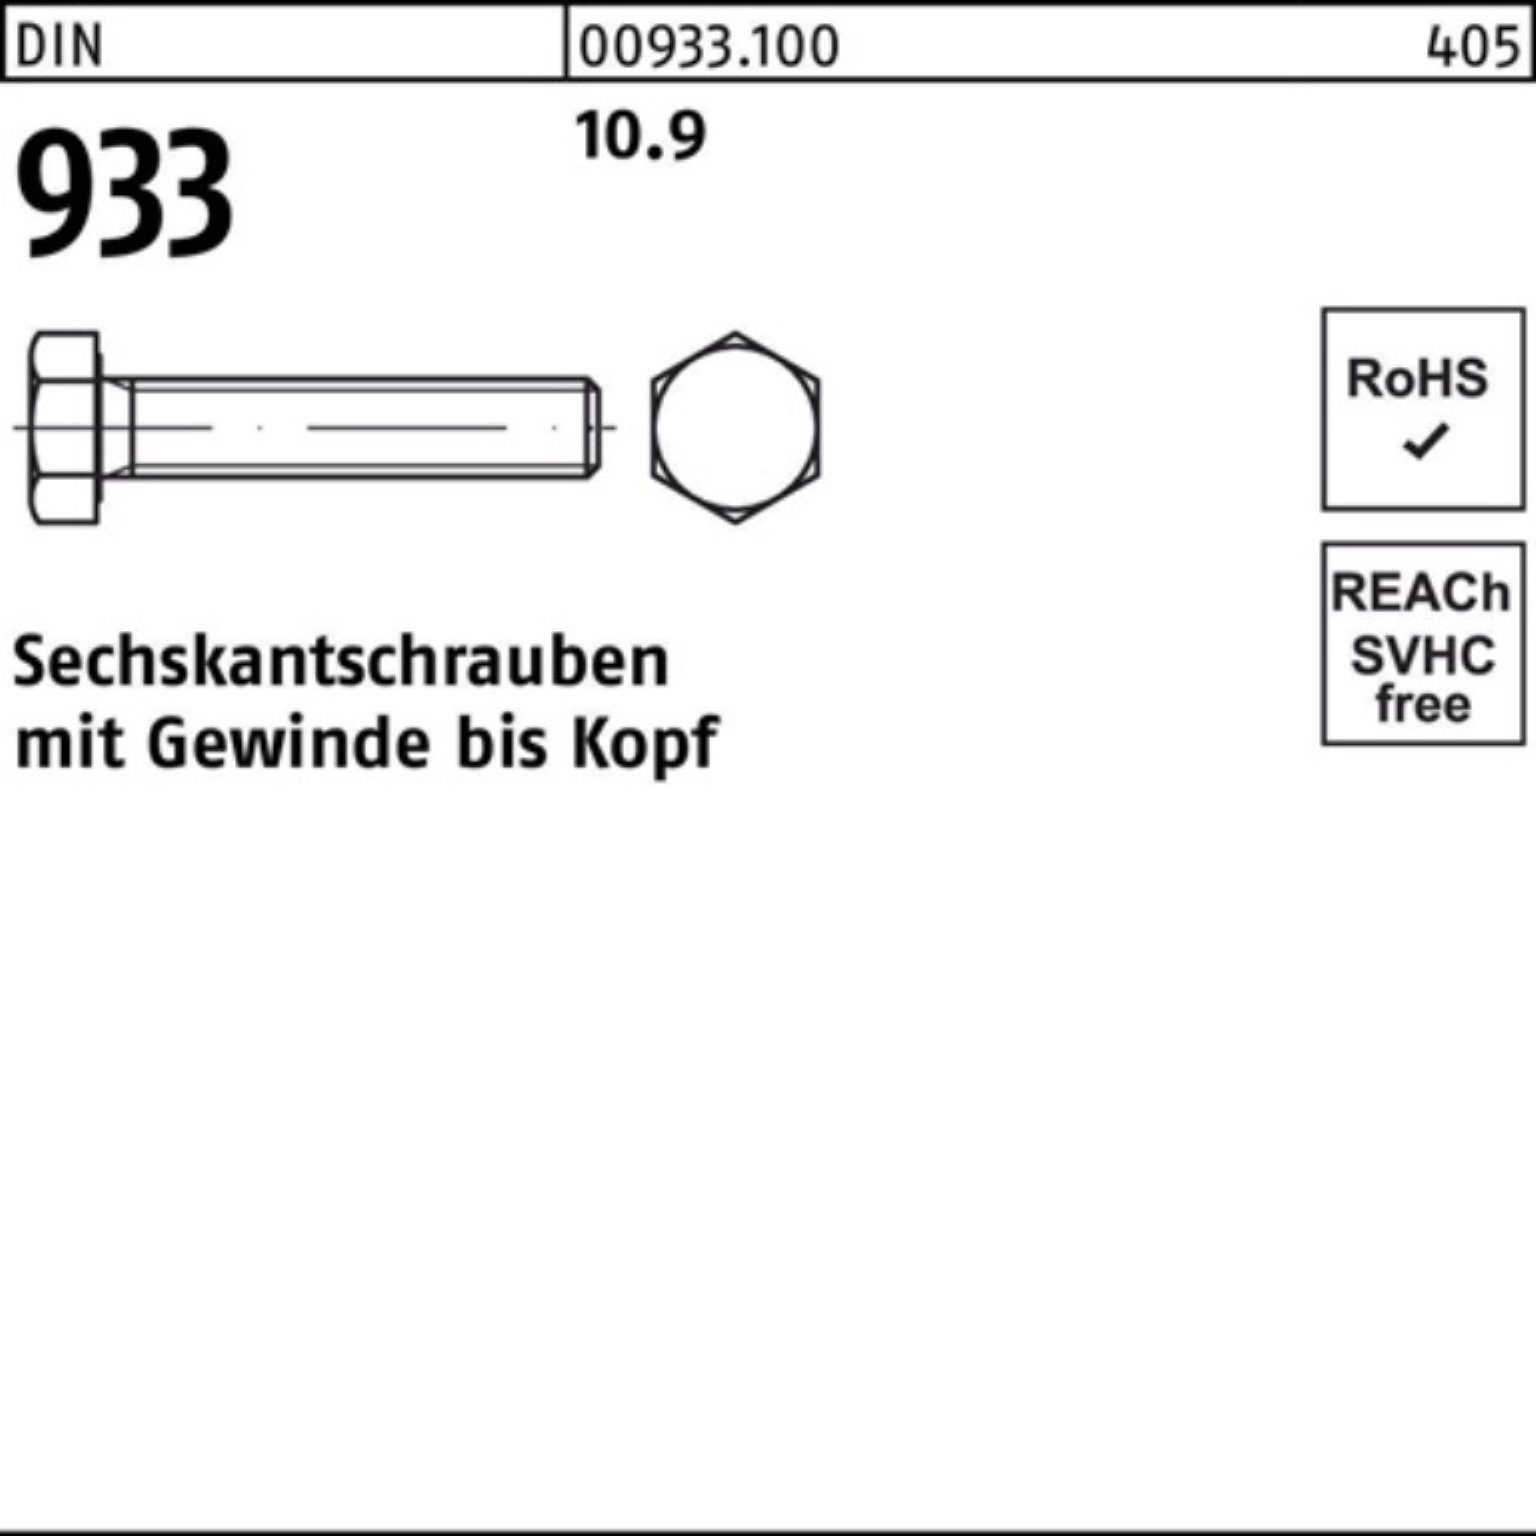 Stück Sechskantschraube 40 93 100 VG Pack M10x 10.9 933 DIN DIN Reyher 100er Sechskantschraube